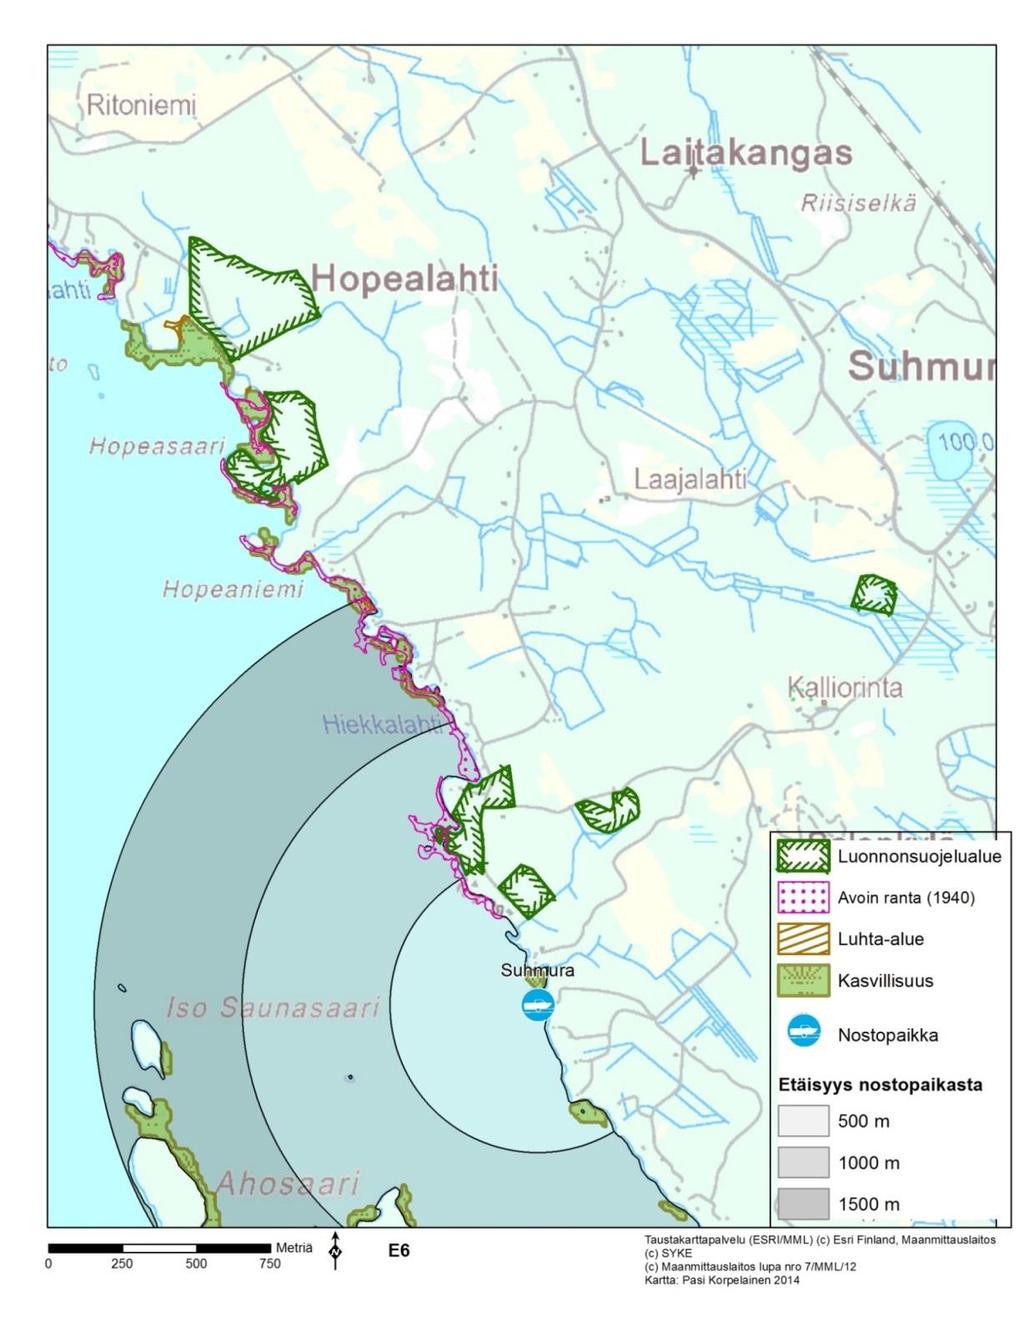 HOITOSUOSITUS: Petrinlahden alueella rantakiinteistöjen omistajat voivat edelleen hoitaa laitureidensa ympäristöä halutessaan annettujen suositusten mukaisesti. Alueelle ei esitetä hoitotoimenpiteitä.